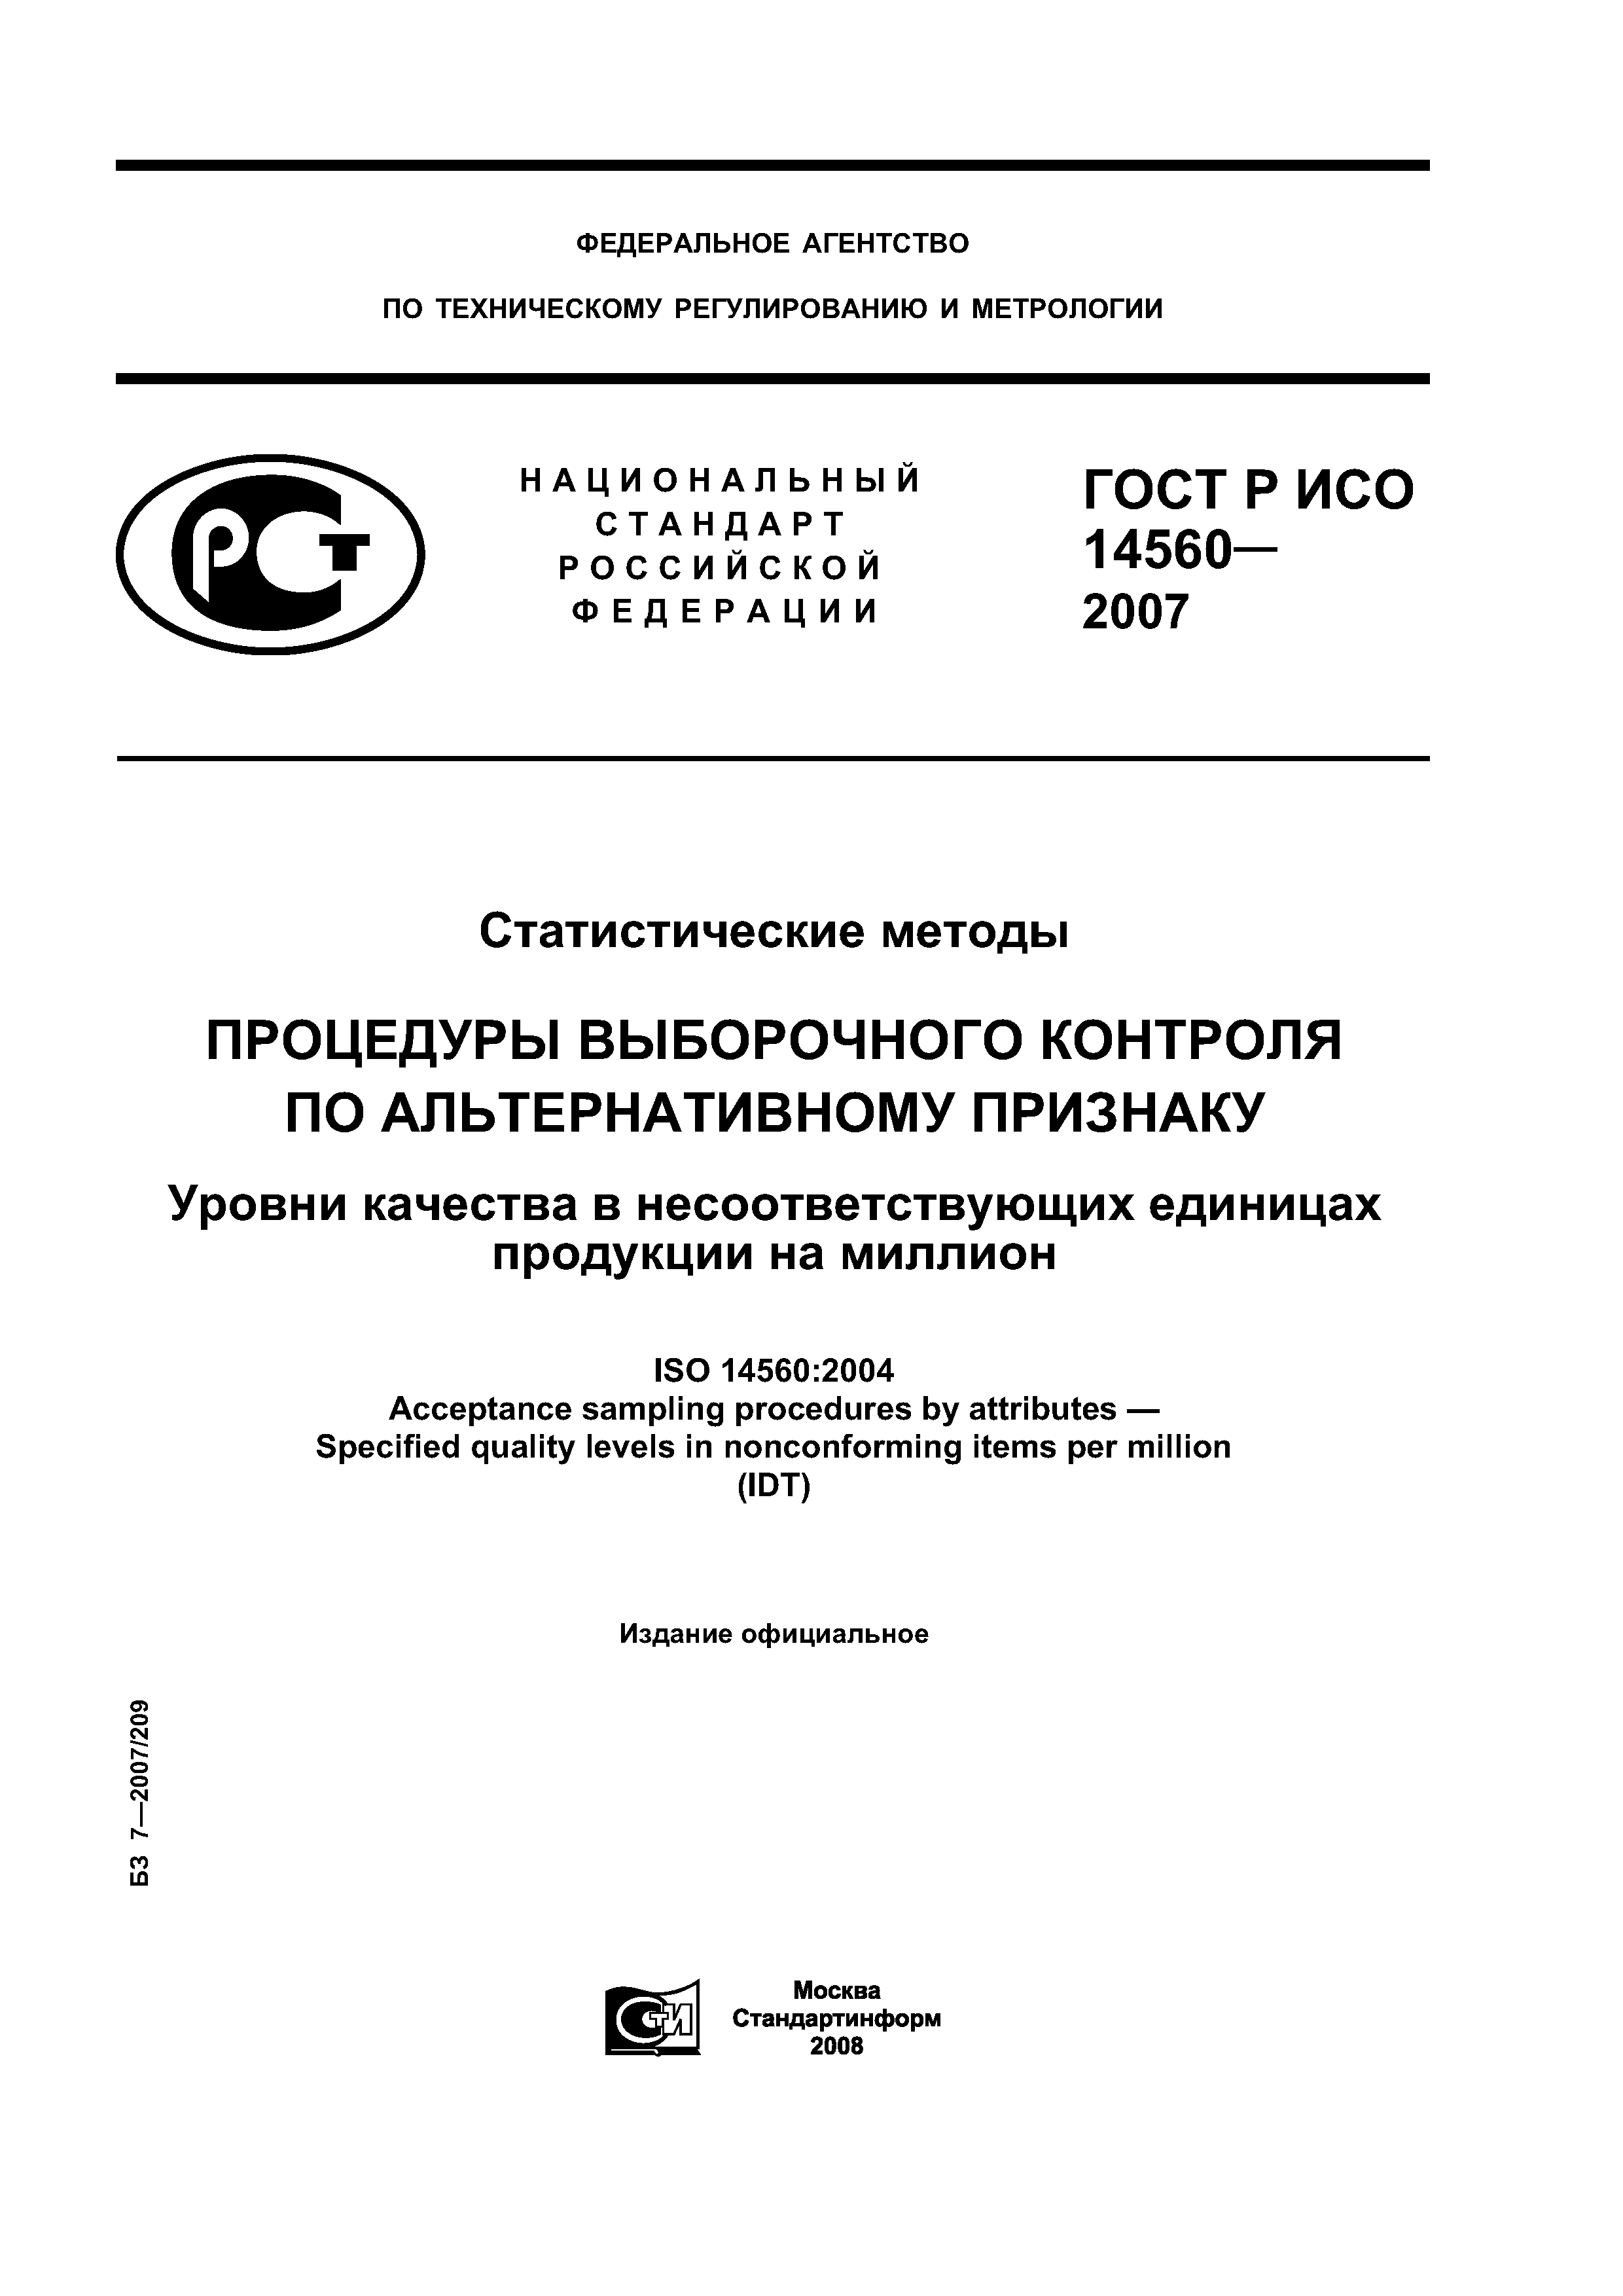 ГОСТ Р ИСО 14560-2007